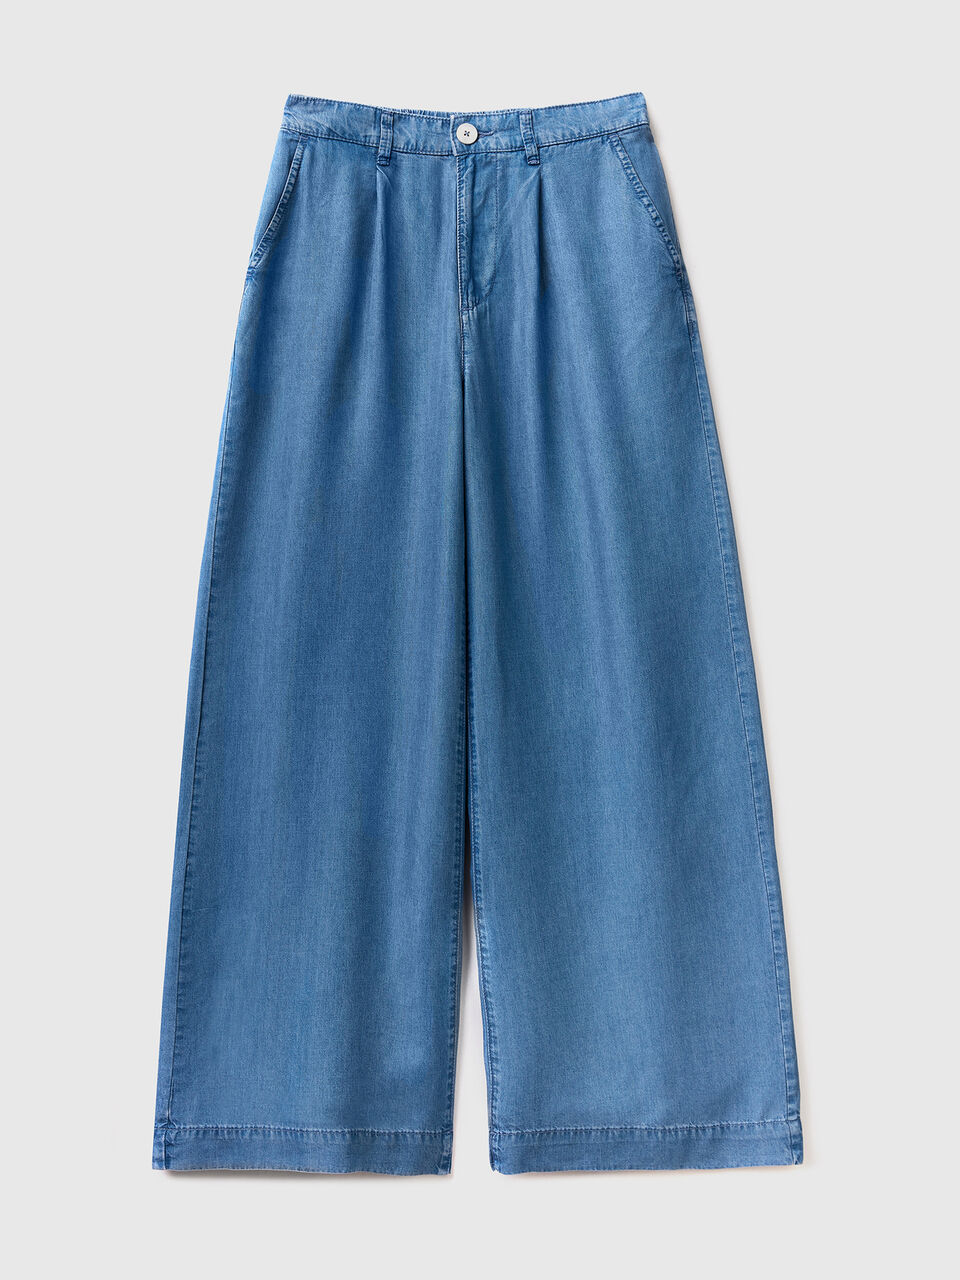 Light Blue Pants - Cute Chambray Pants - Wide-Leg Pants - Lulus